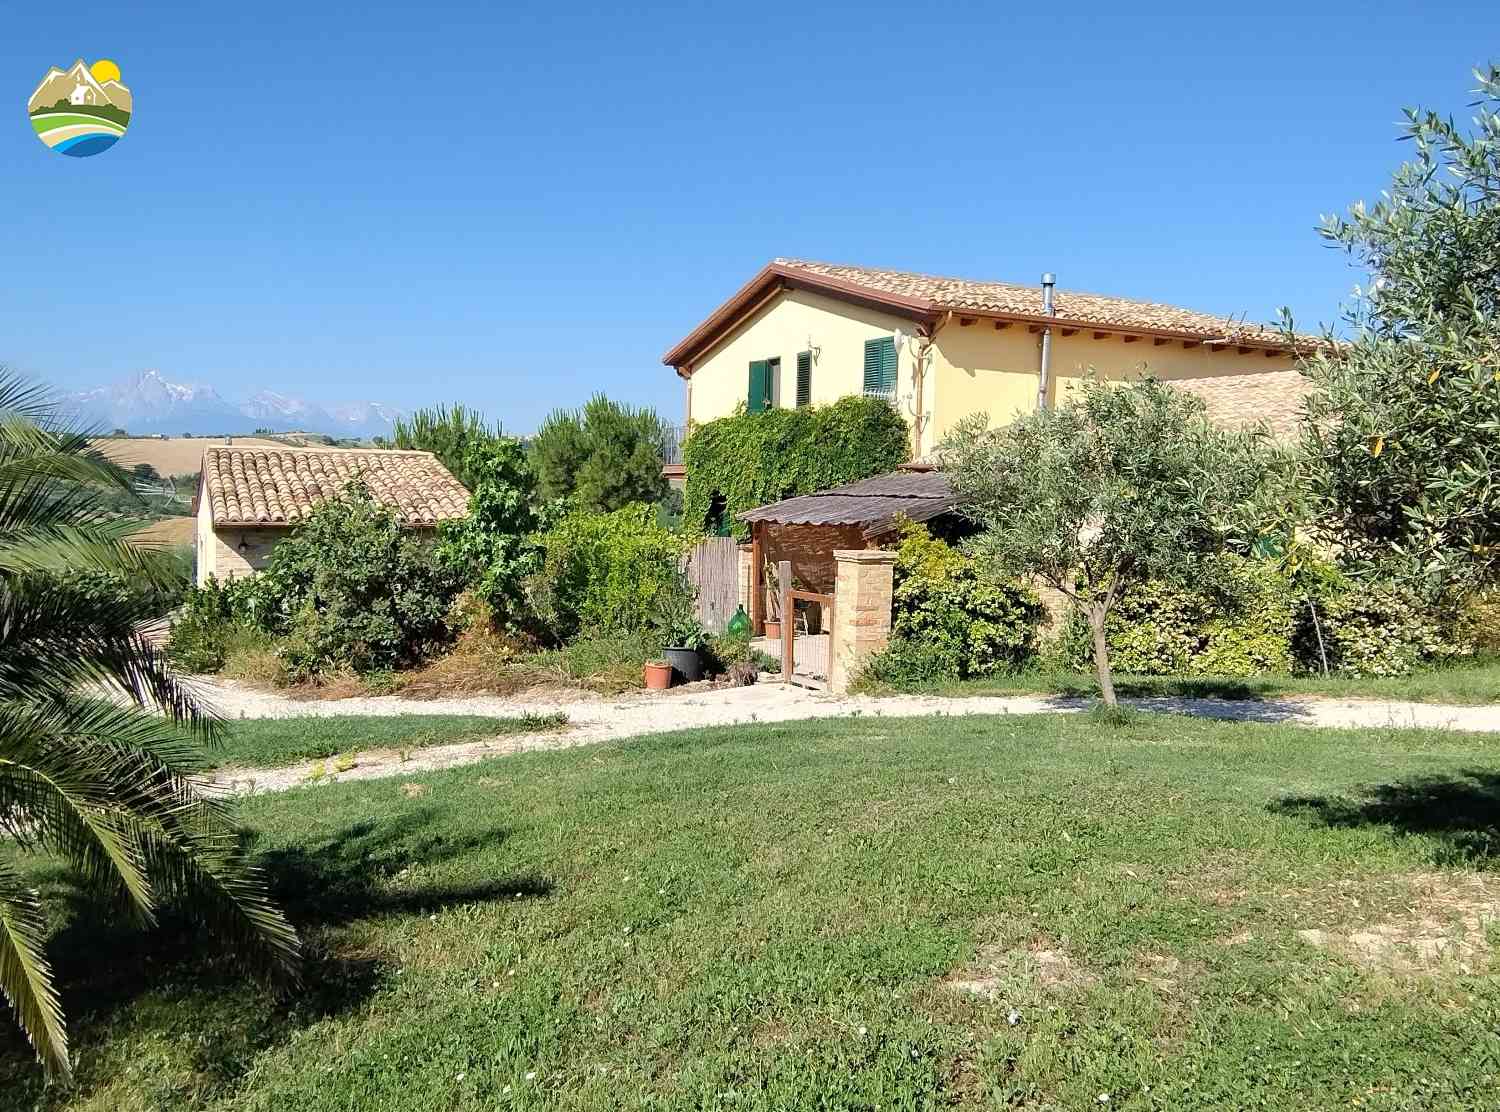 Villa Villa in vendita Bellante (TE), Villa Il Frutteto - Bellante - EUR 509.983 680